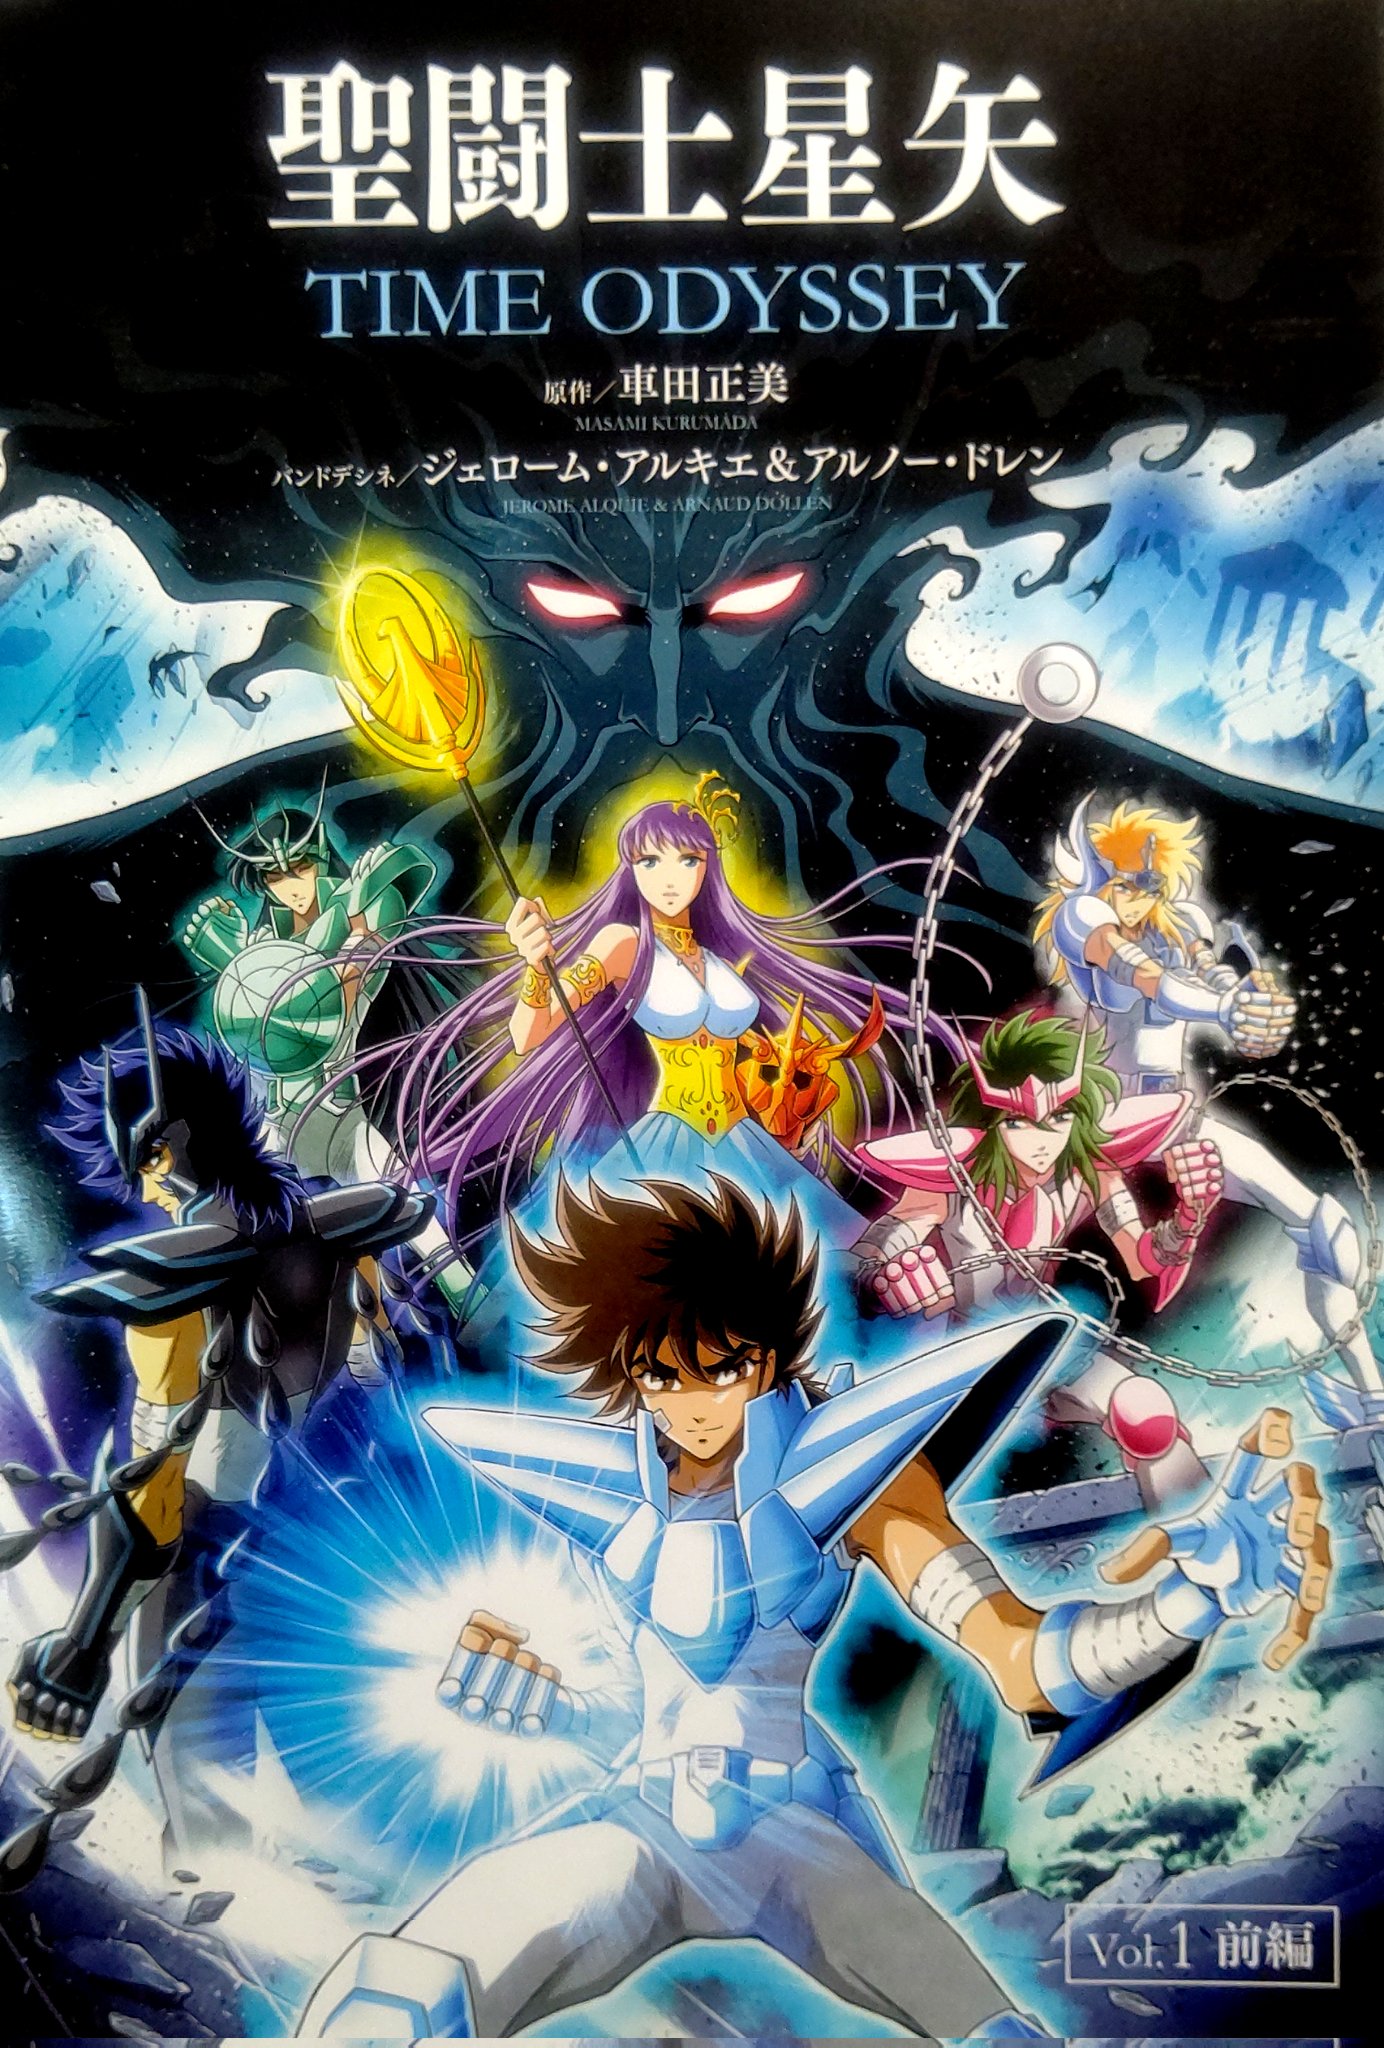 Taizen Saint Seiya on X: Filmes do anime clássico de Cavaleiros do Zodíaco  entram no catálogo do @PrimeVideoBR! Os 2 primeiros filmes já encontram  disponíveis em versão full HD e com áudio